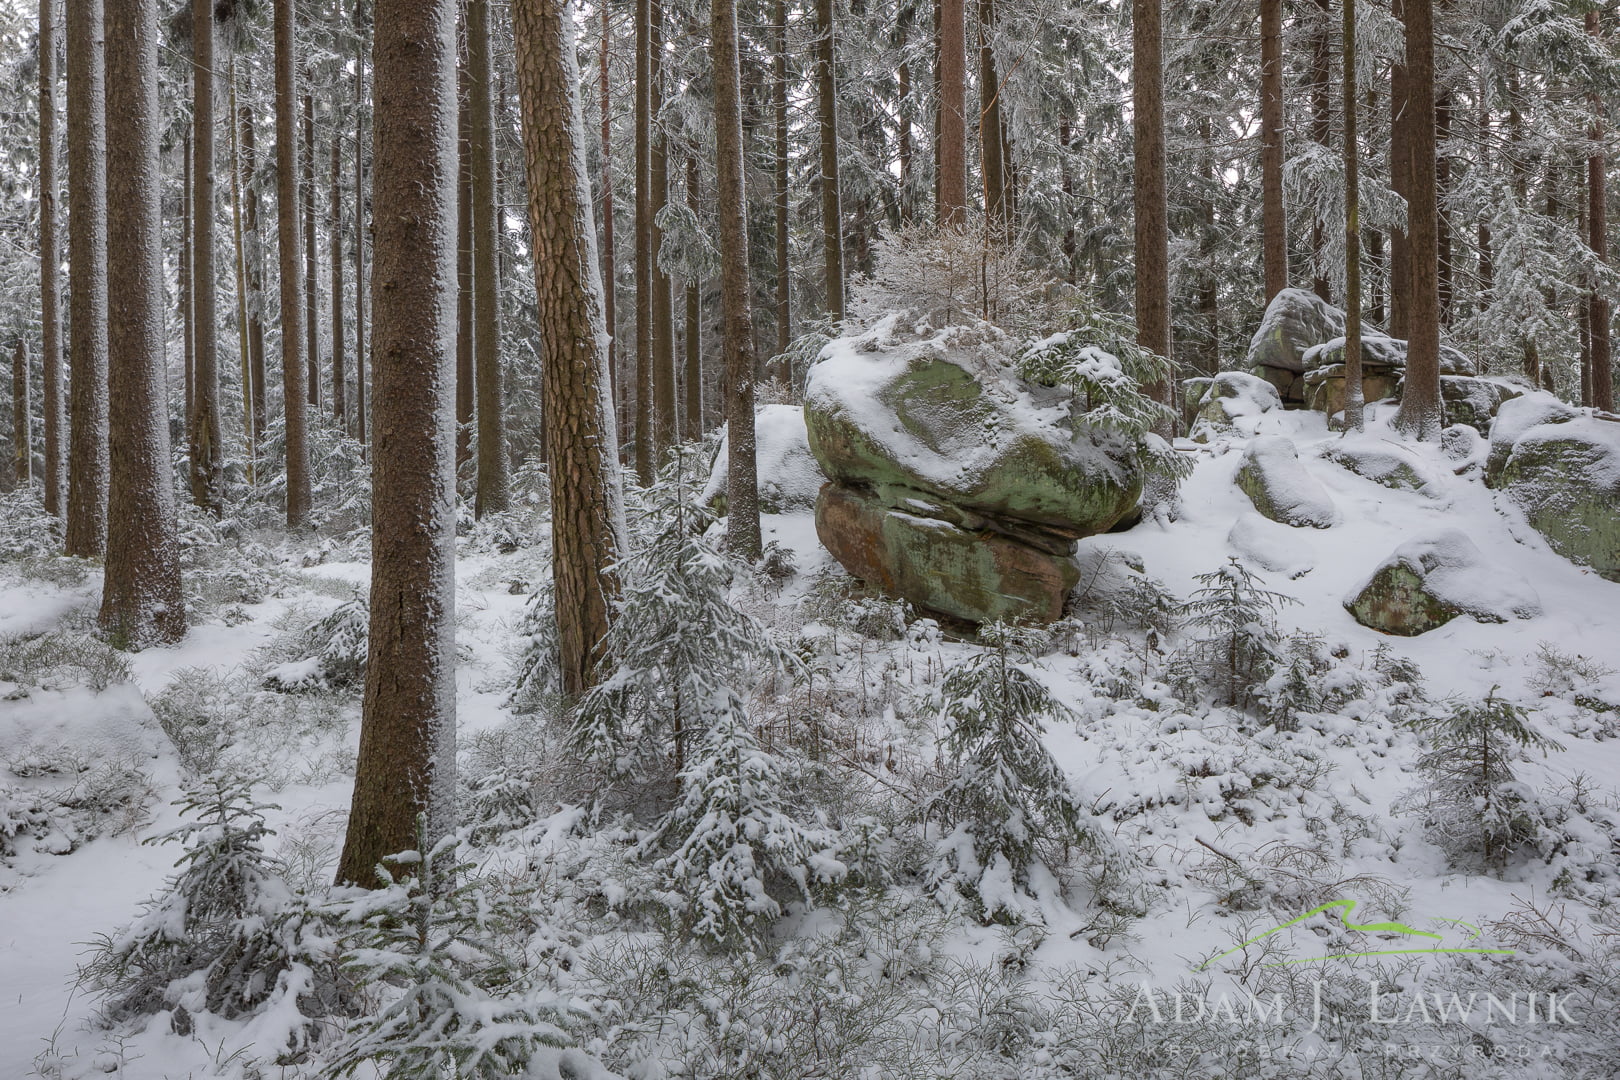 Skalny grzyb w zimowym lesie